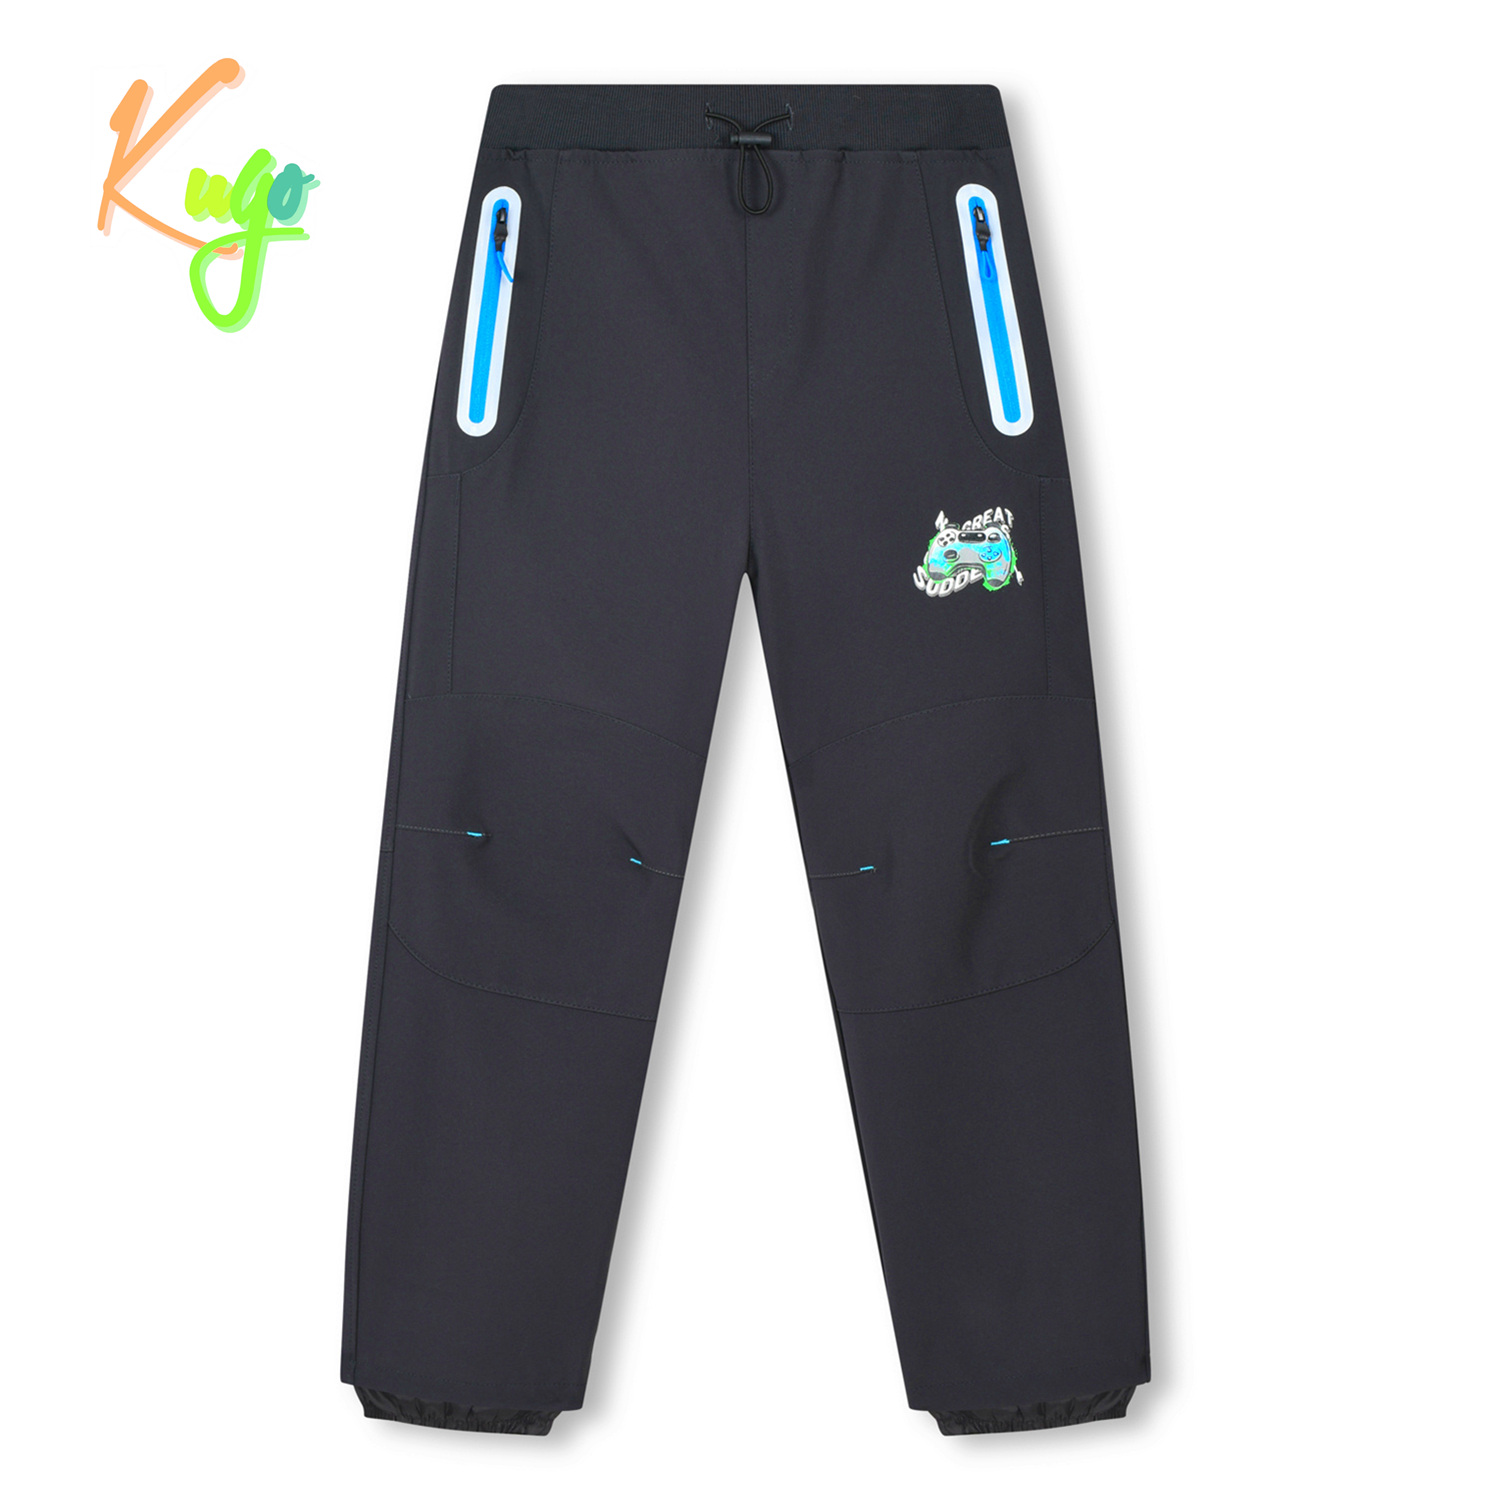 Chlapecké softshellové kalhoty - KUGO HK3118, šedá / modré zipy Barva: Šedá, Velikost: 140